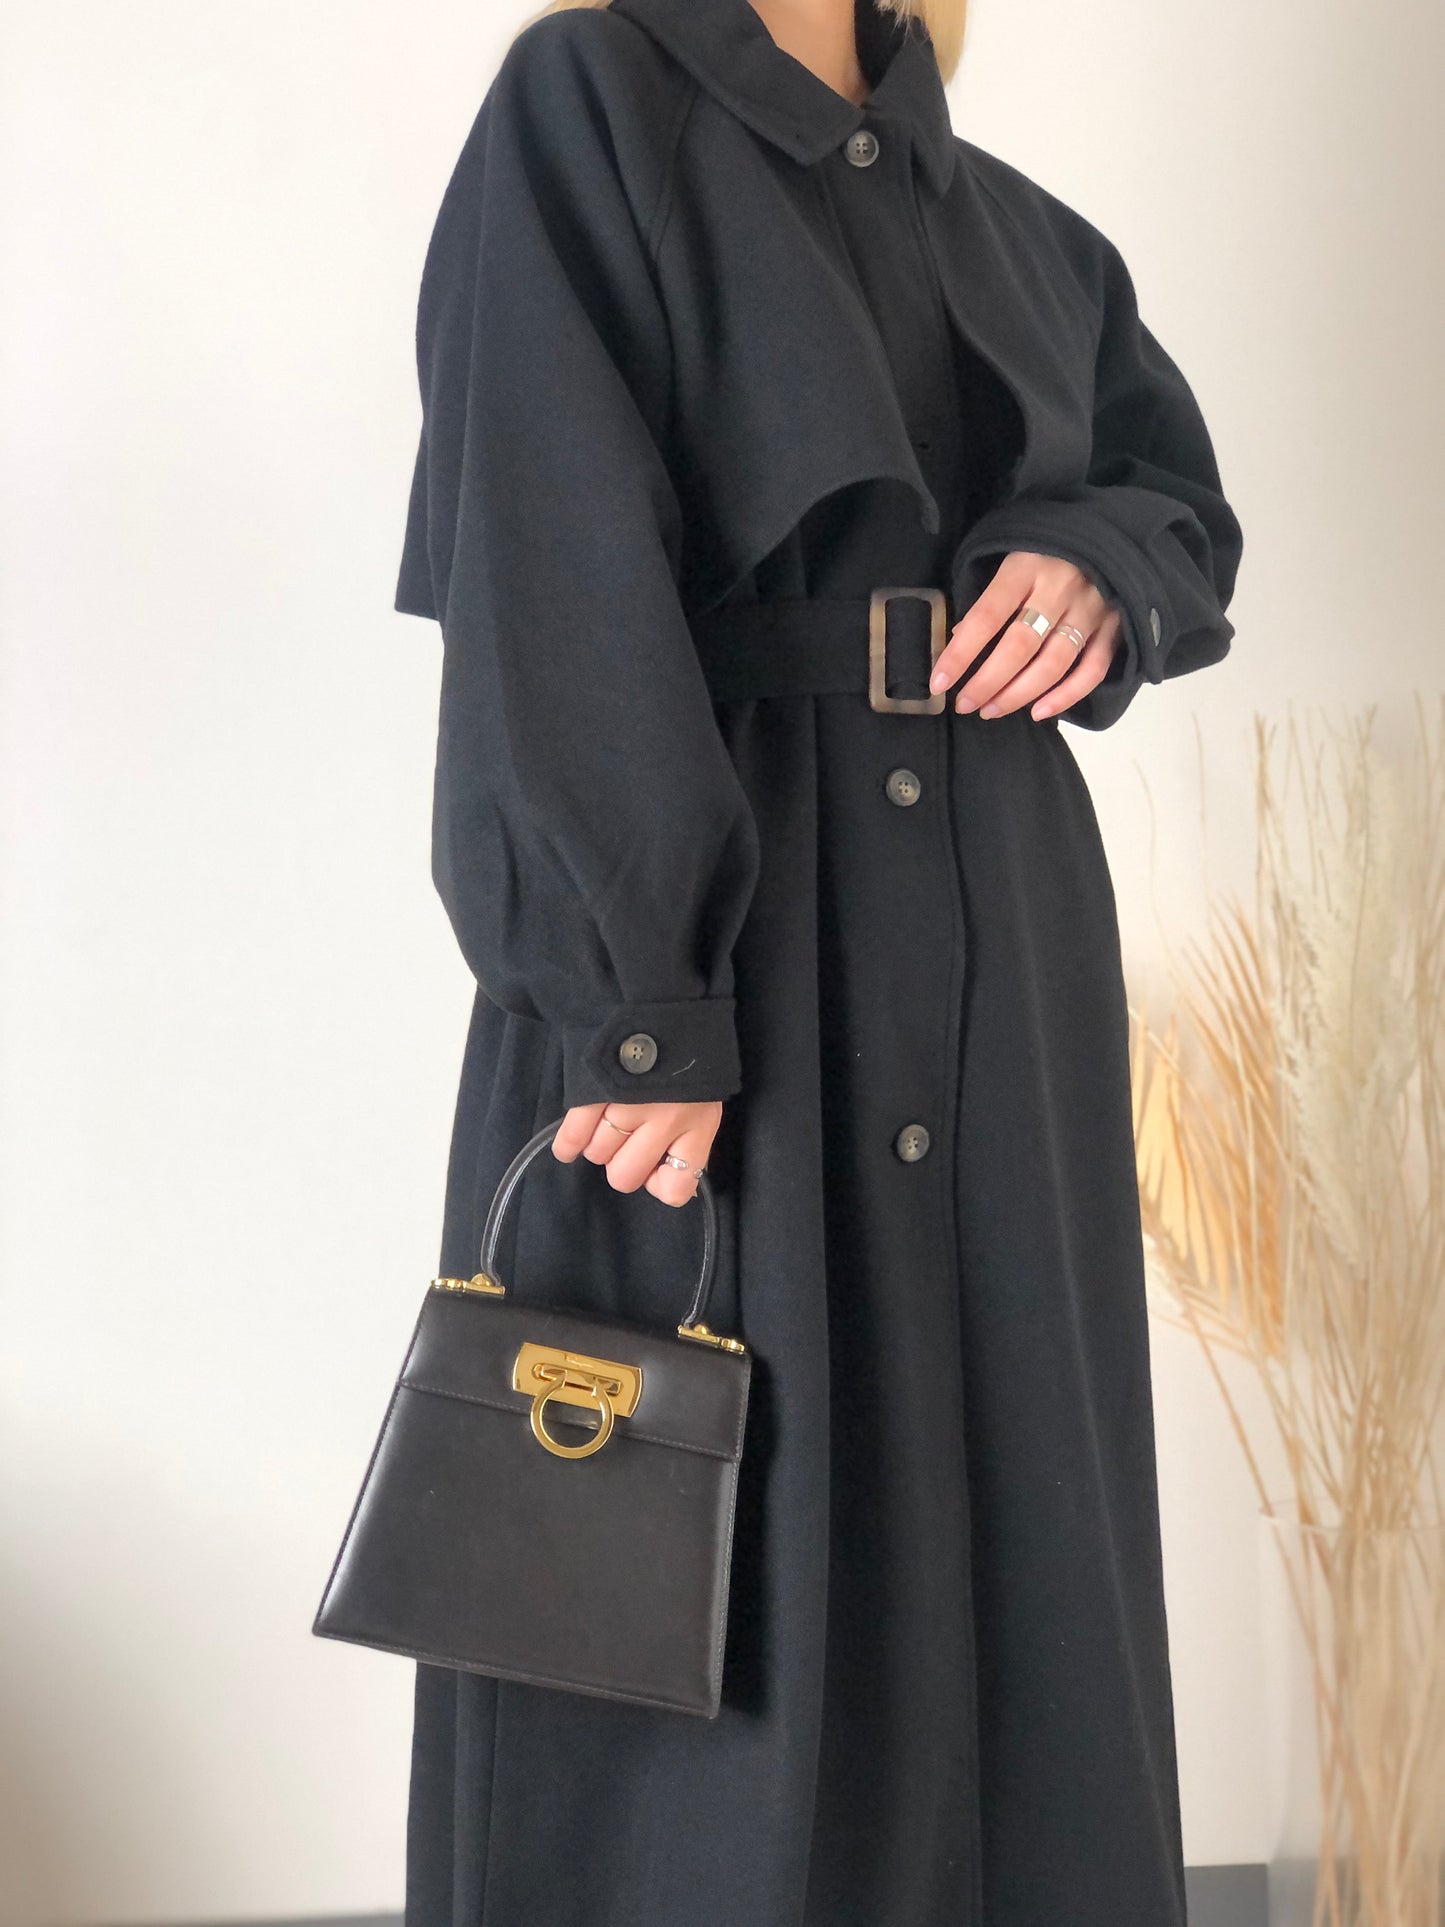 Salvatore Ferragamo Gancini Leather Two-way Top Handle Handbag Shoulder bag Brown Vintage 5nrmgt